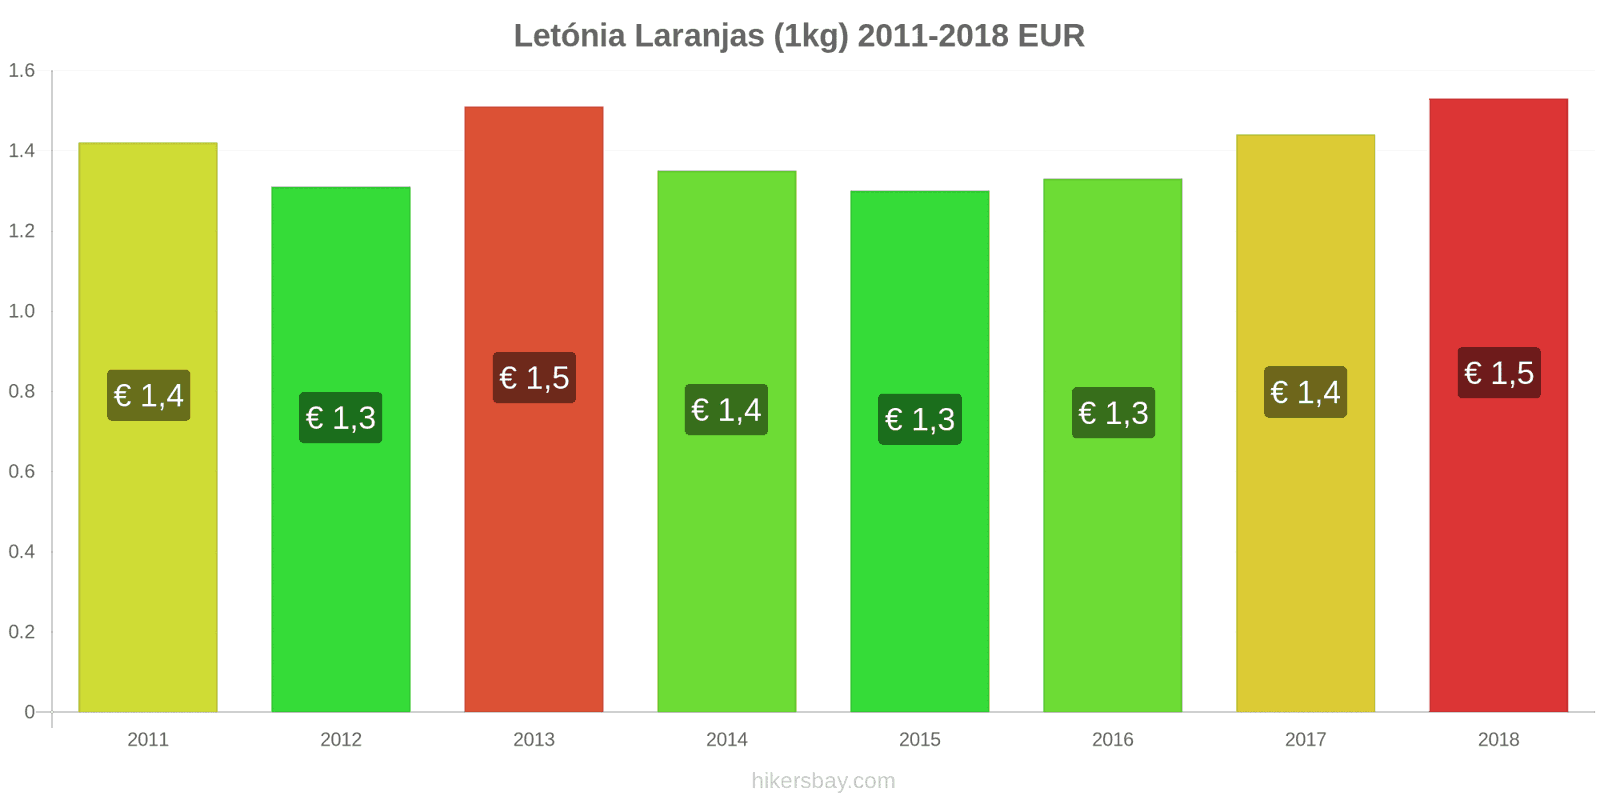 Letónia mudanças de preços Laranjas (1kg) hikersbay.com